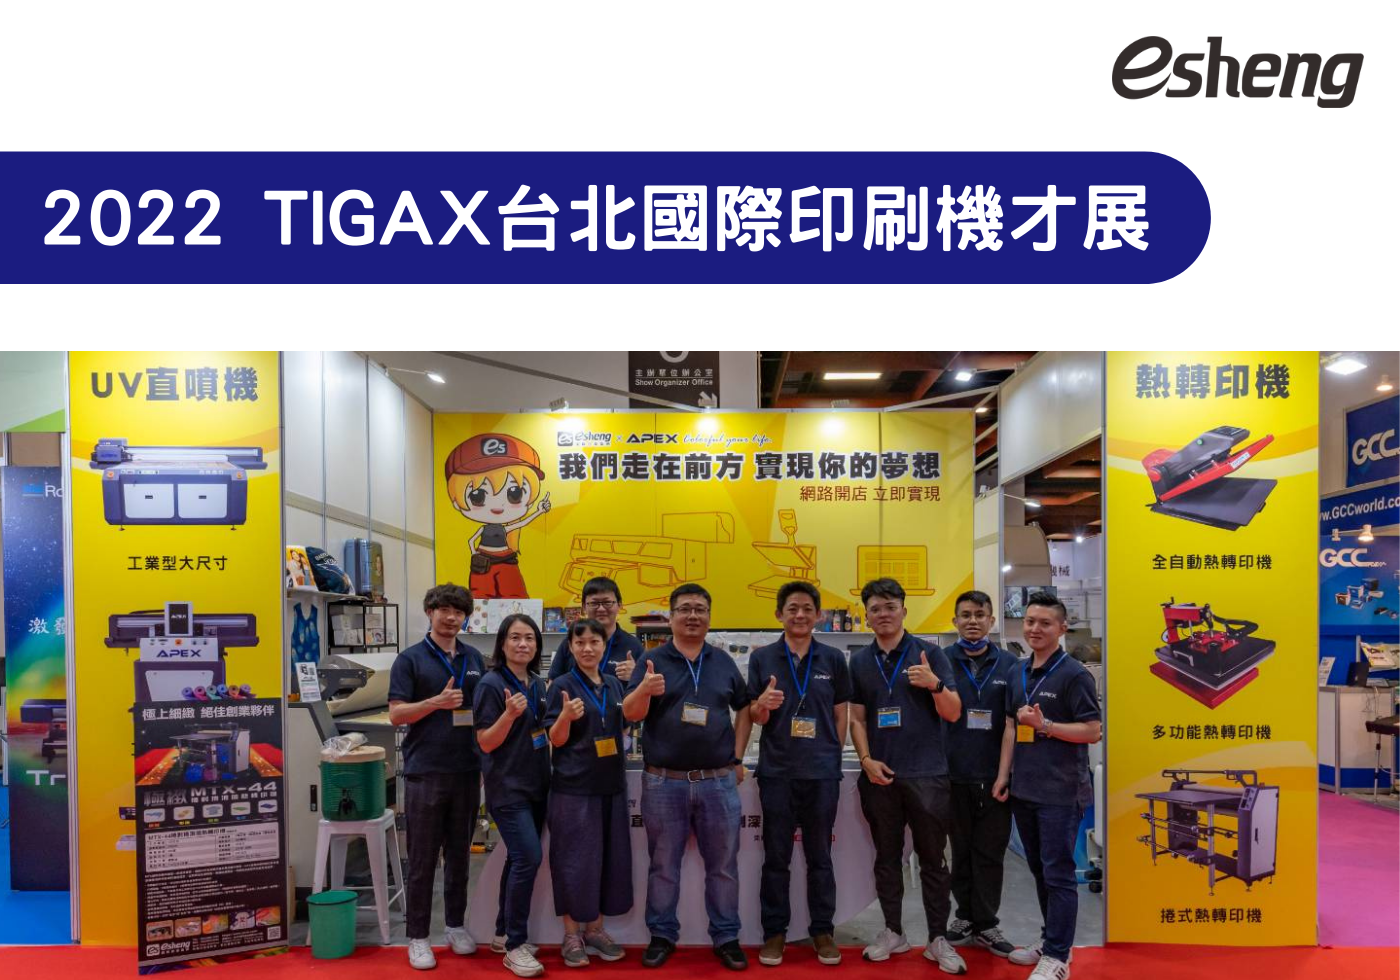 您目前正在查看 2022 TIGAX台北國際印刷機材展 參展花絮